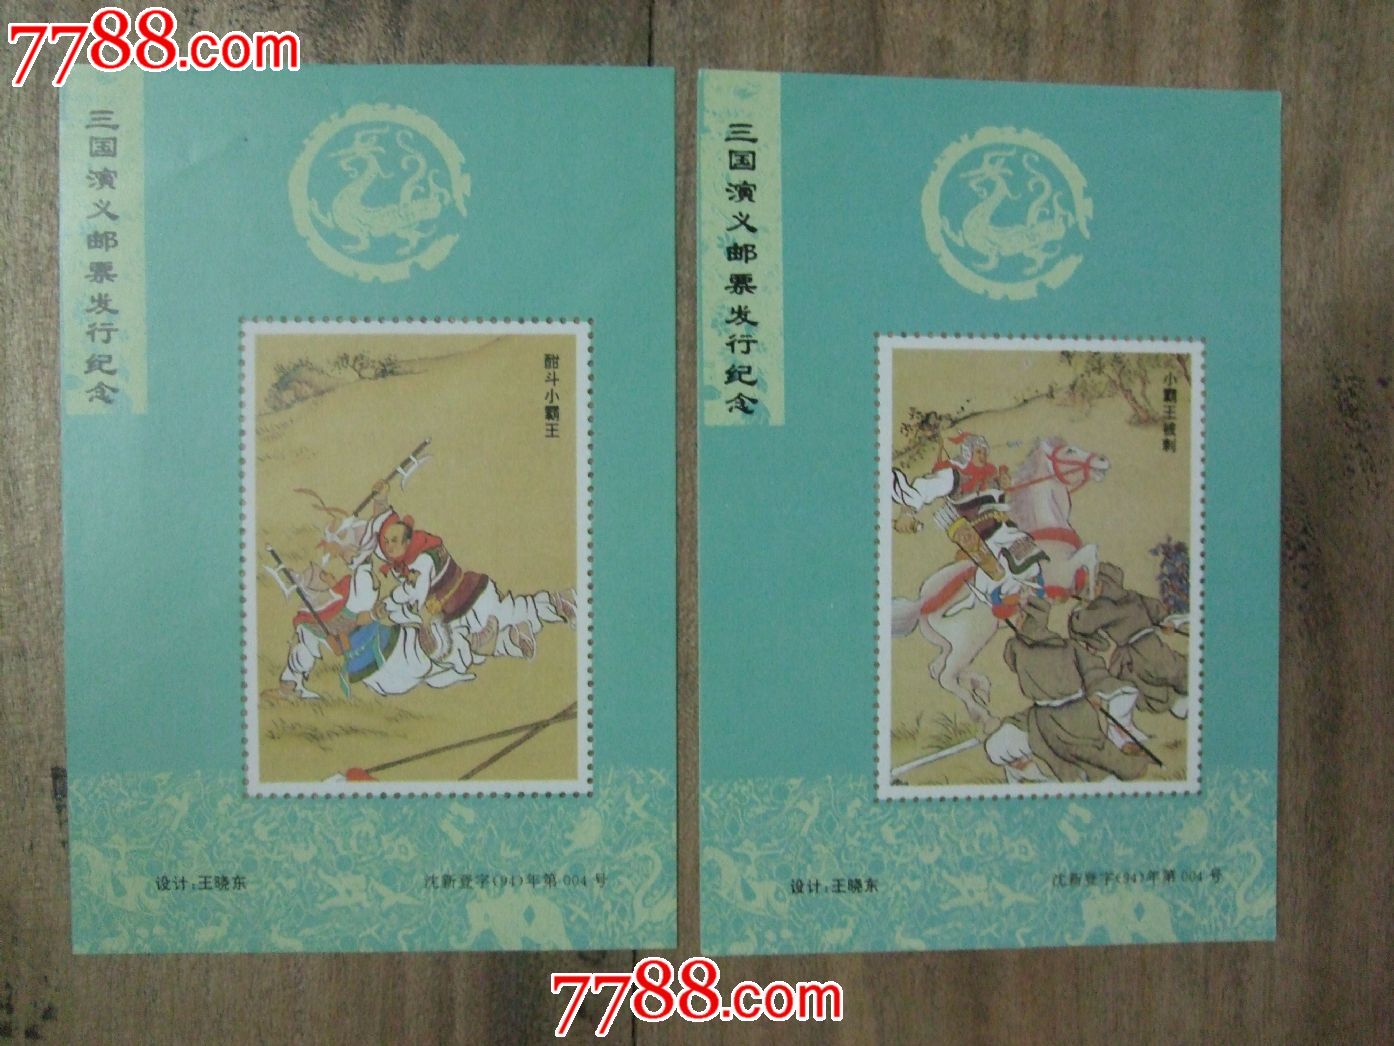 三国演义邮票发行纪念-价格:6元-se23589491-